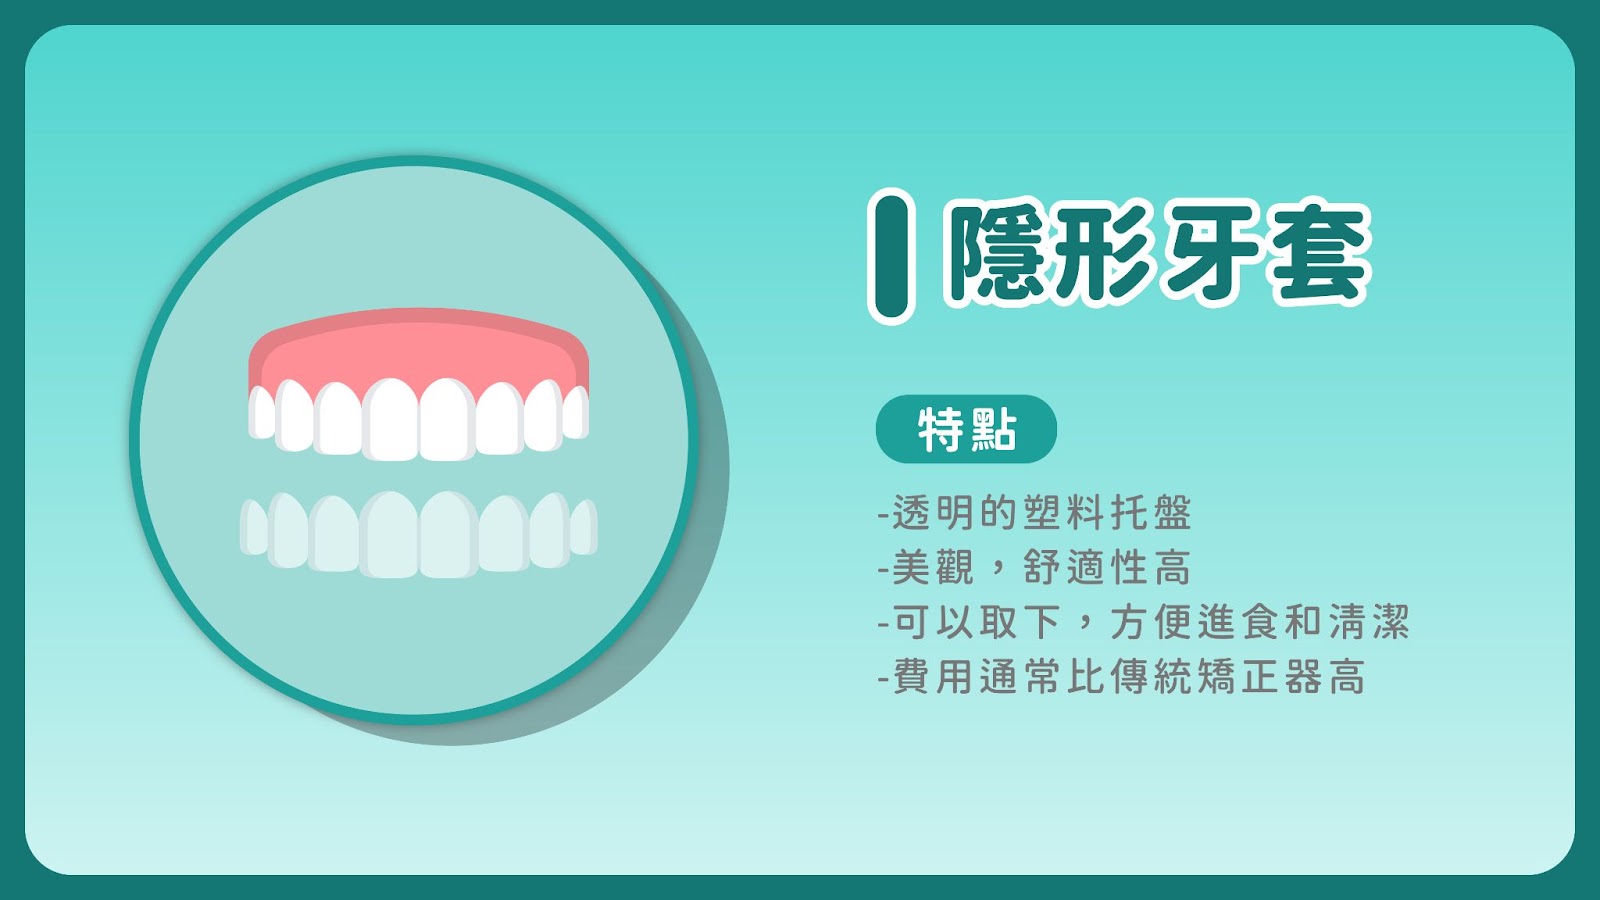 傳統的牙齒矯正方法主要是利用金屬矯正器，這包括金屬托槽和矯正線。這種方法的主要優勢在於其堅固性和效率，尤其適用於複雜或嚴重的牙齒錯位問題